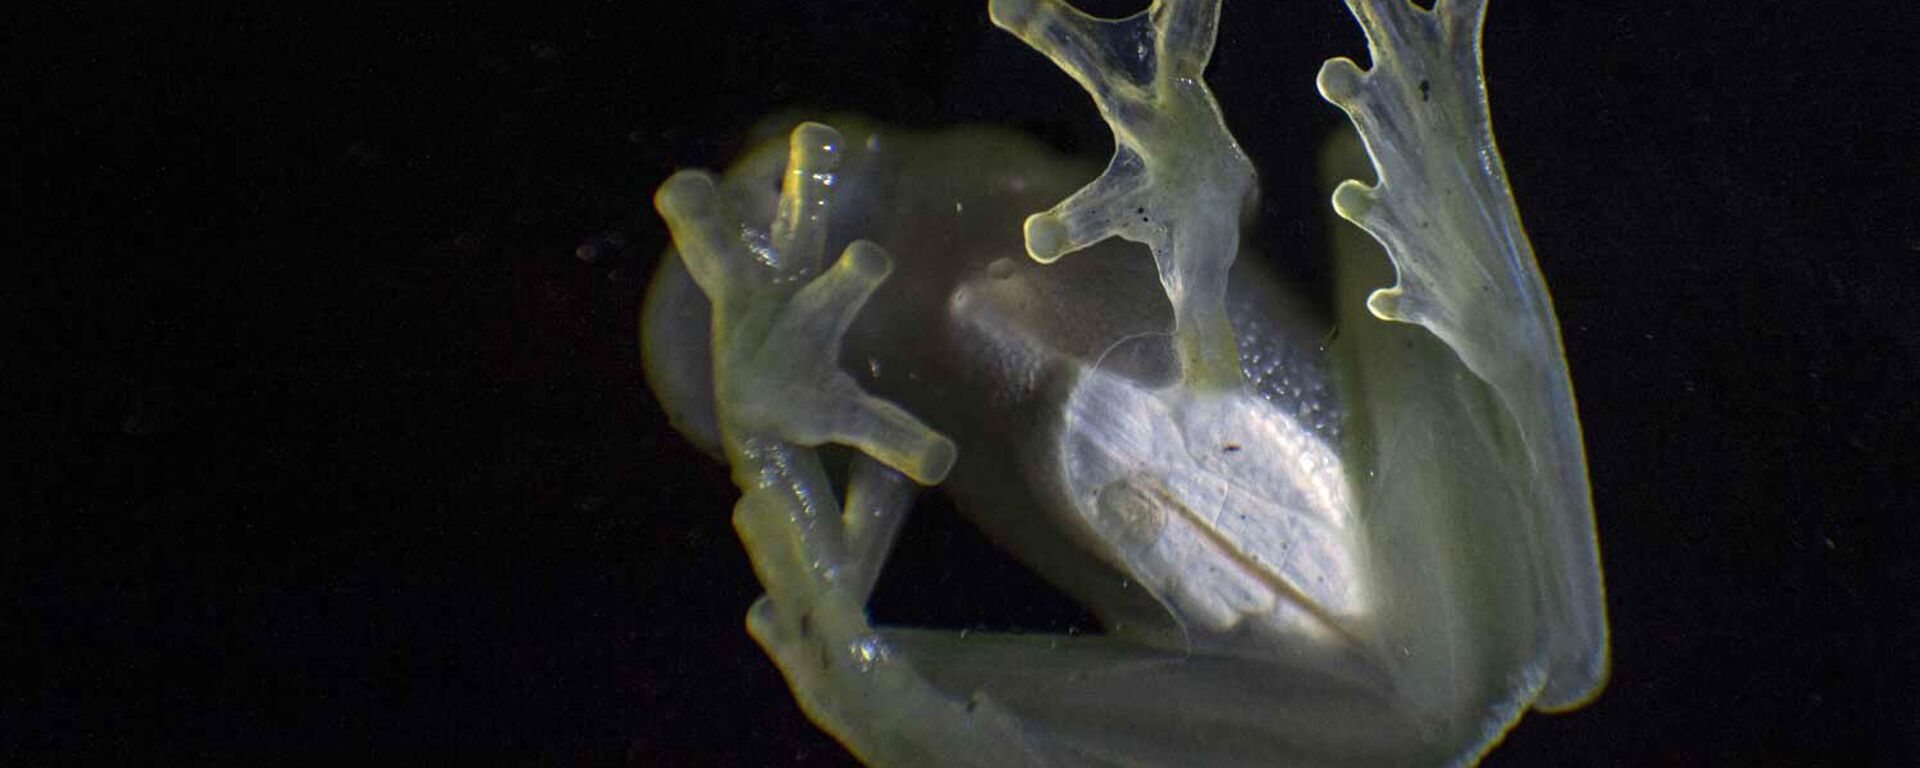 Staklena žaba belog srca prikazana je u prirodnom rezervatu planine Kordiljera Eskalera u Tarapotou, severoistočni Peru. - Sputnik Srbija, 1920, 24.12.2022